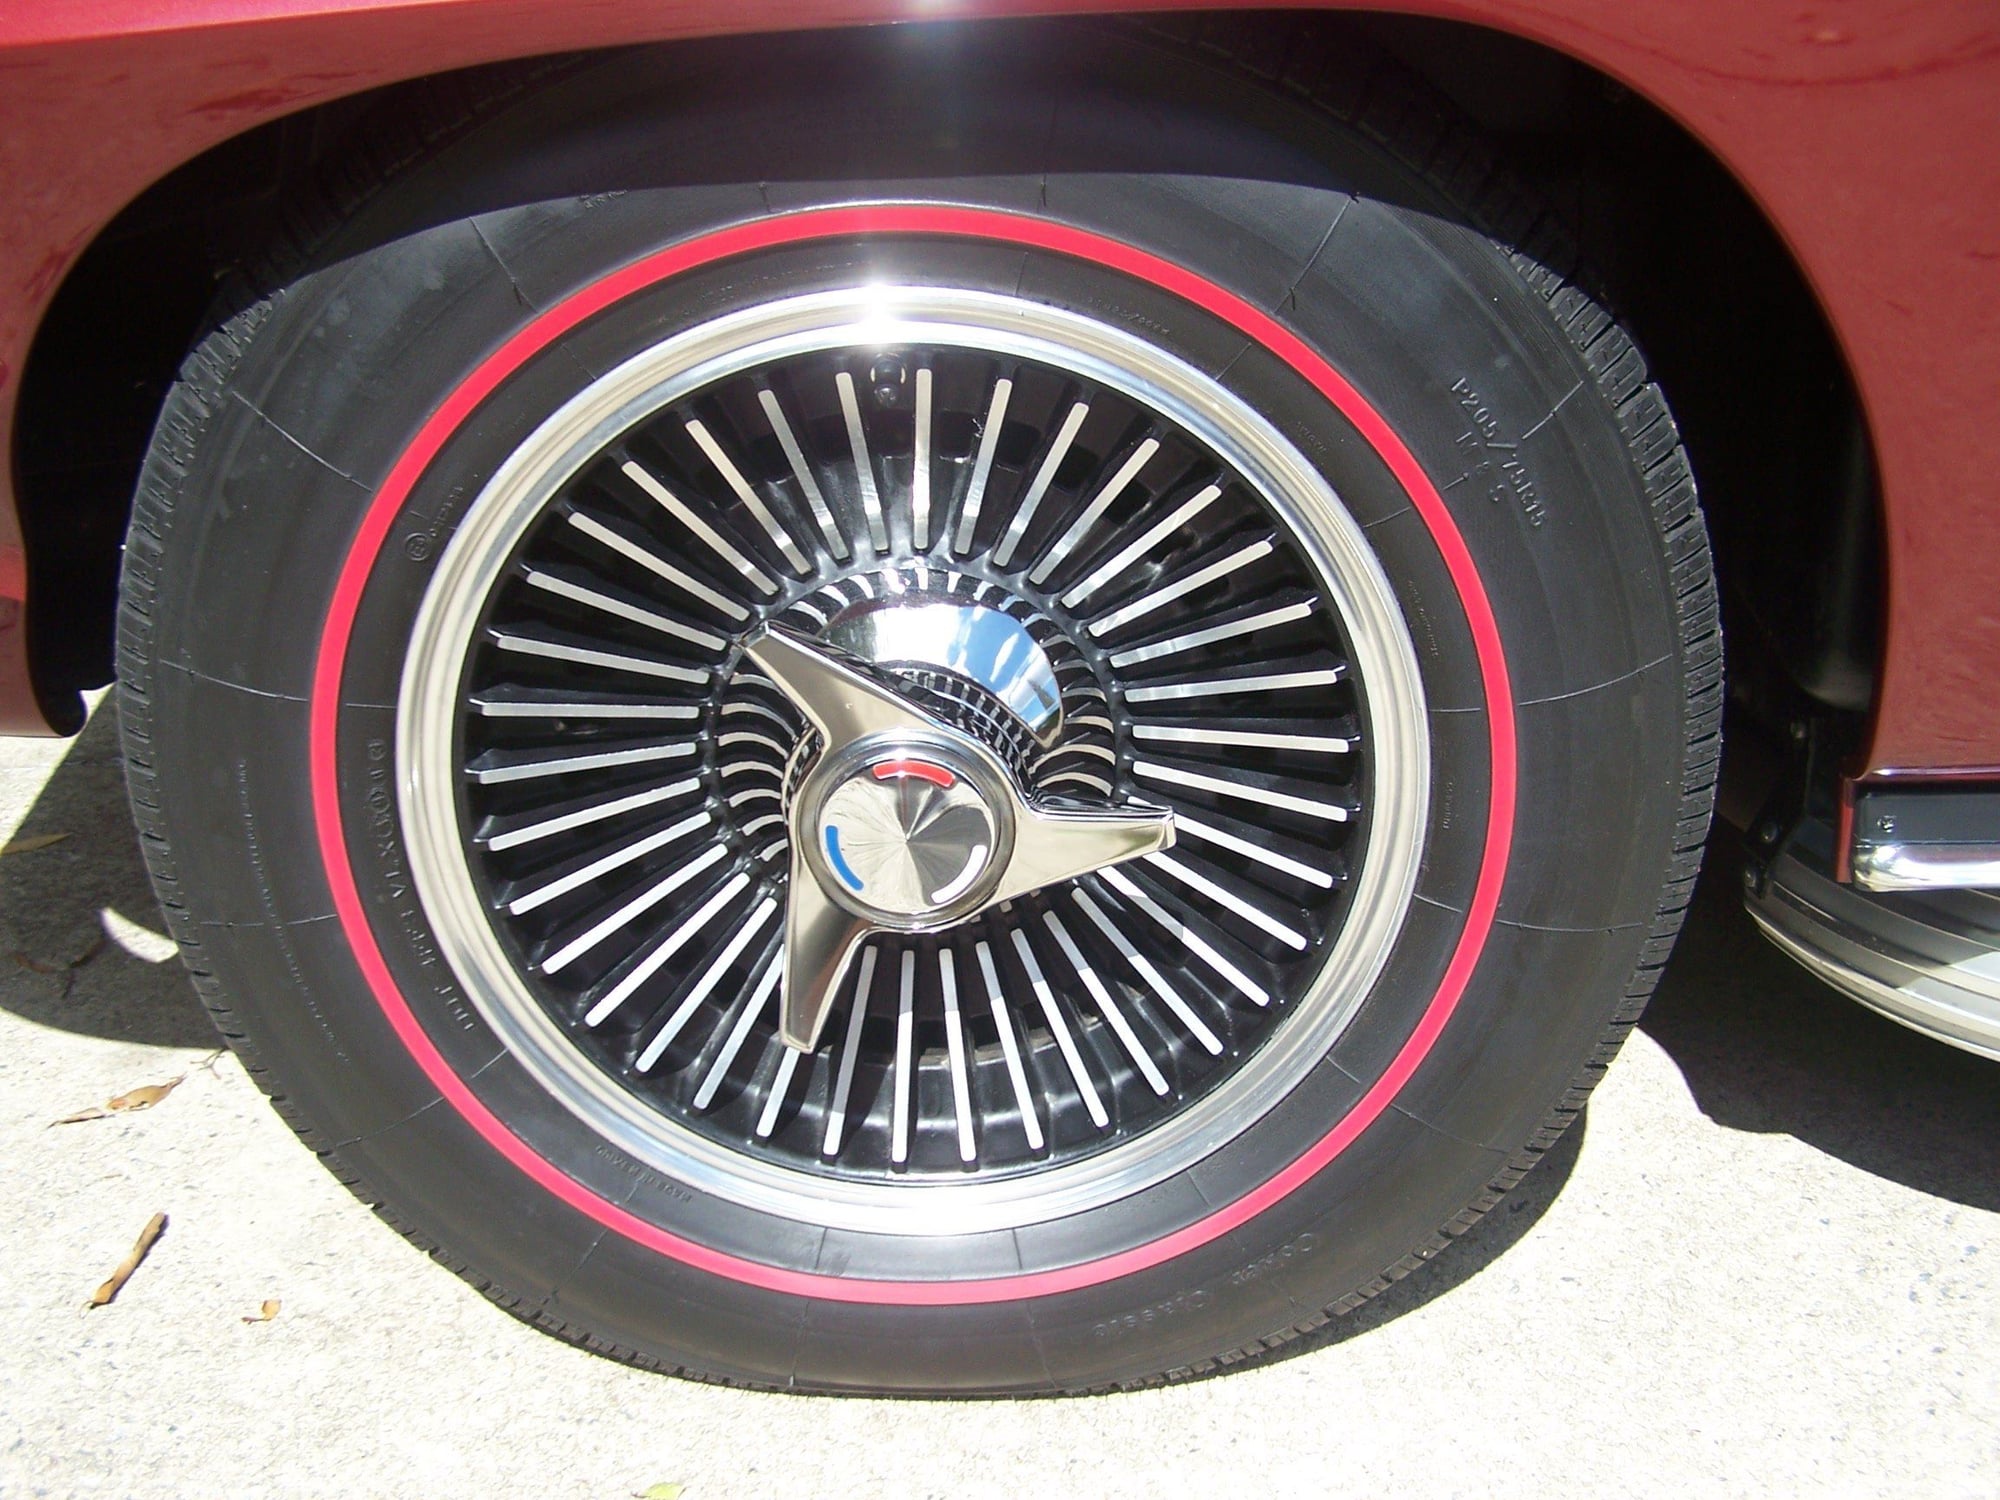 redline tires 1966 corvette